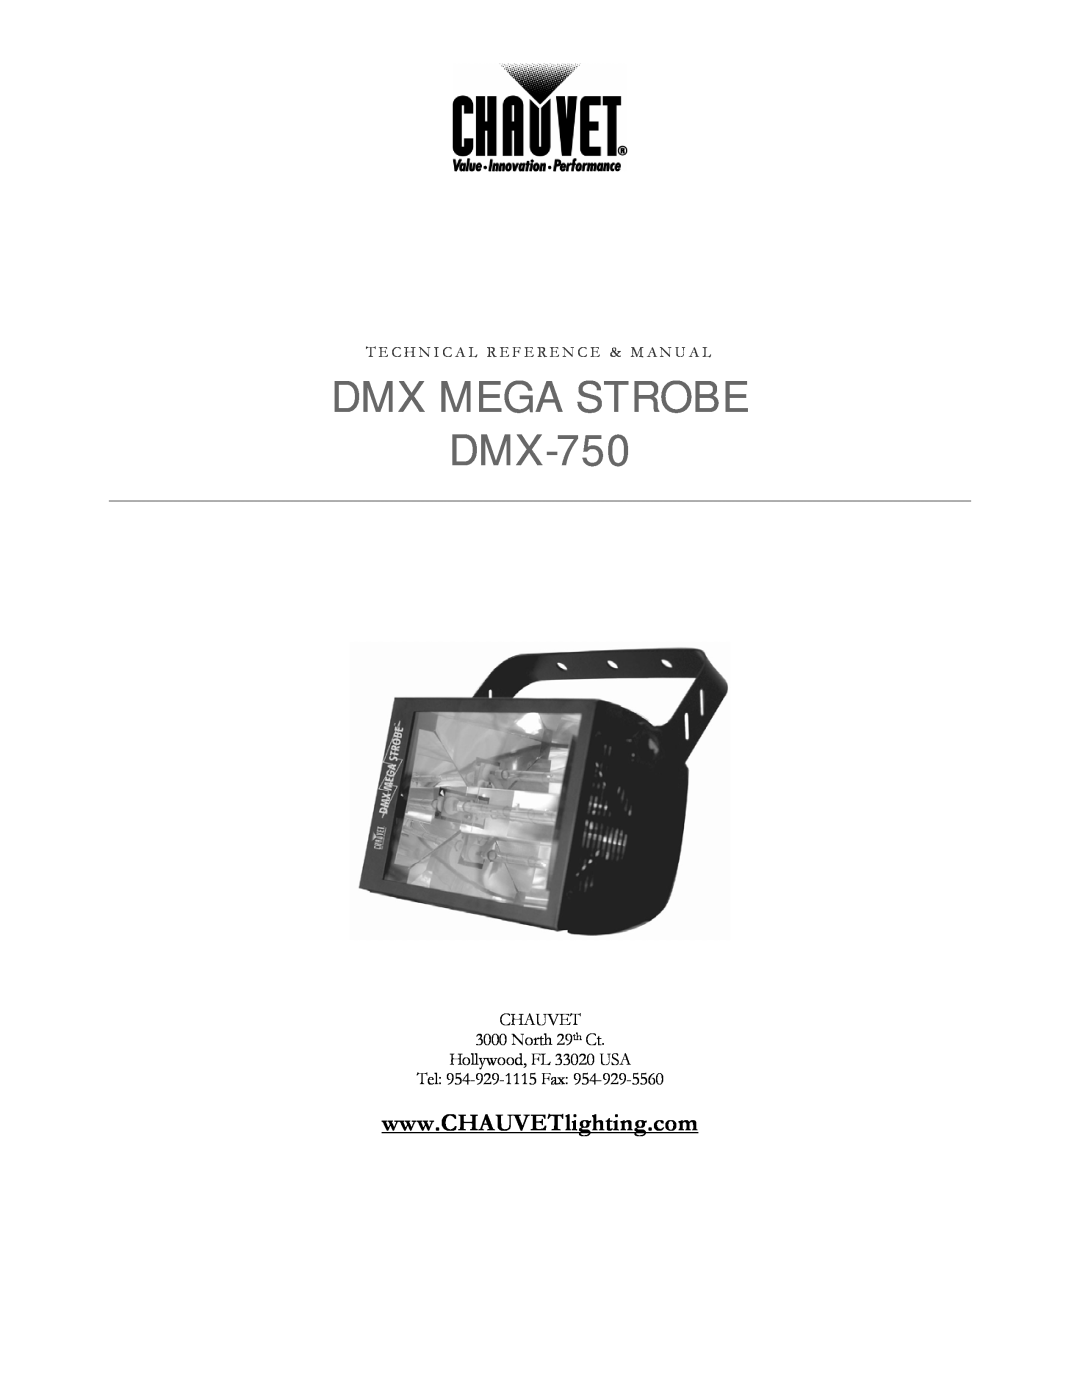 Chauvet manual DMX MEGA STROBE DMX-750, T E C H N I C A L R E F E R E N C E & M A N U A L 